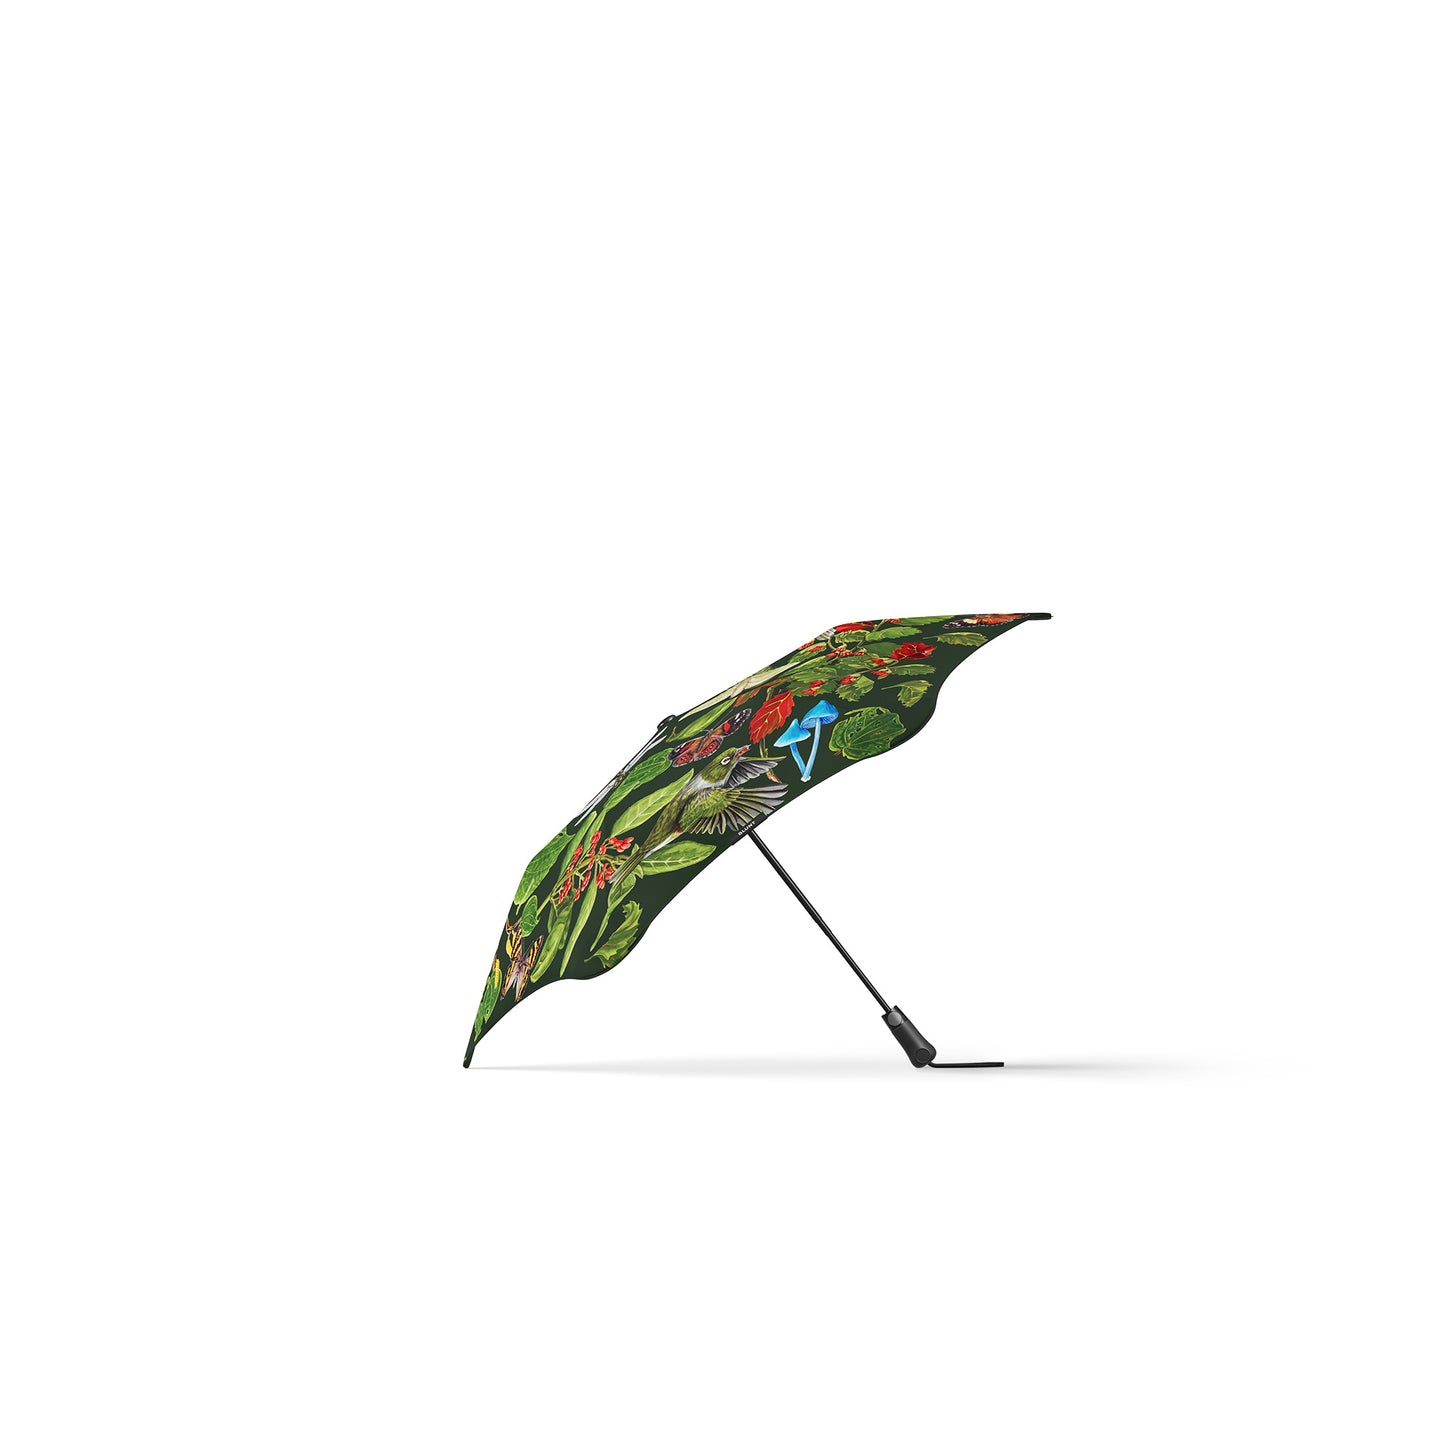 Blunt Metro Umbrella - Forest